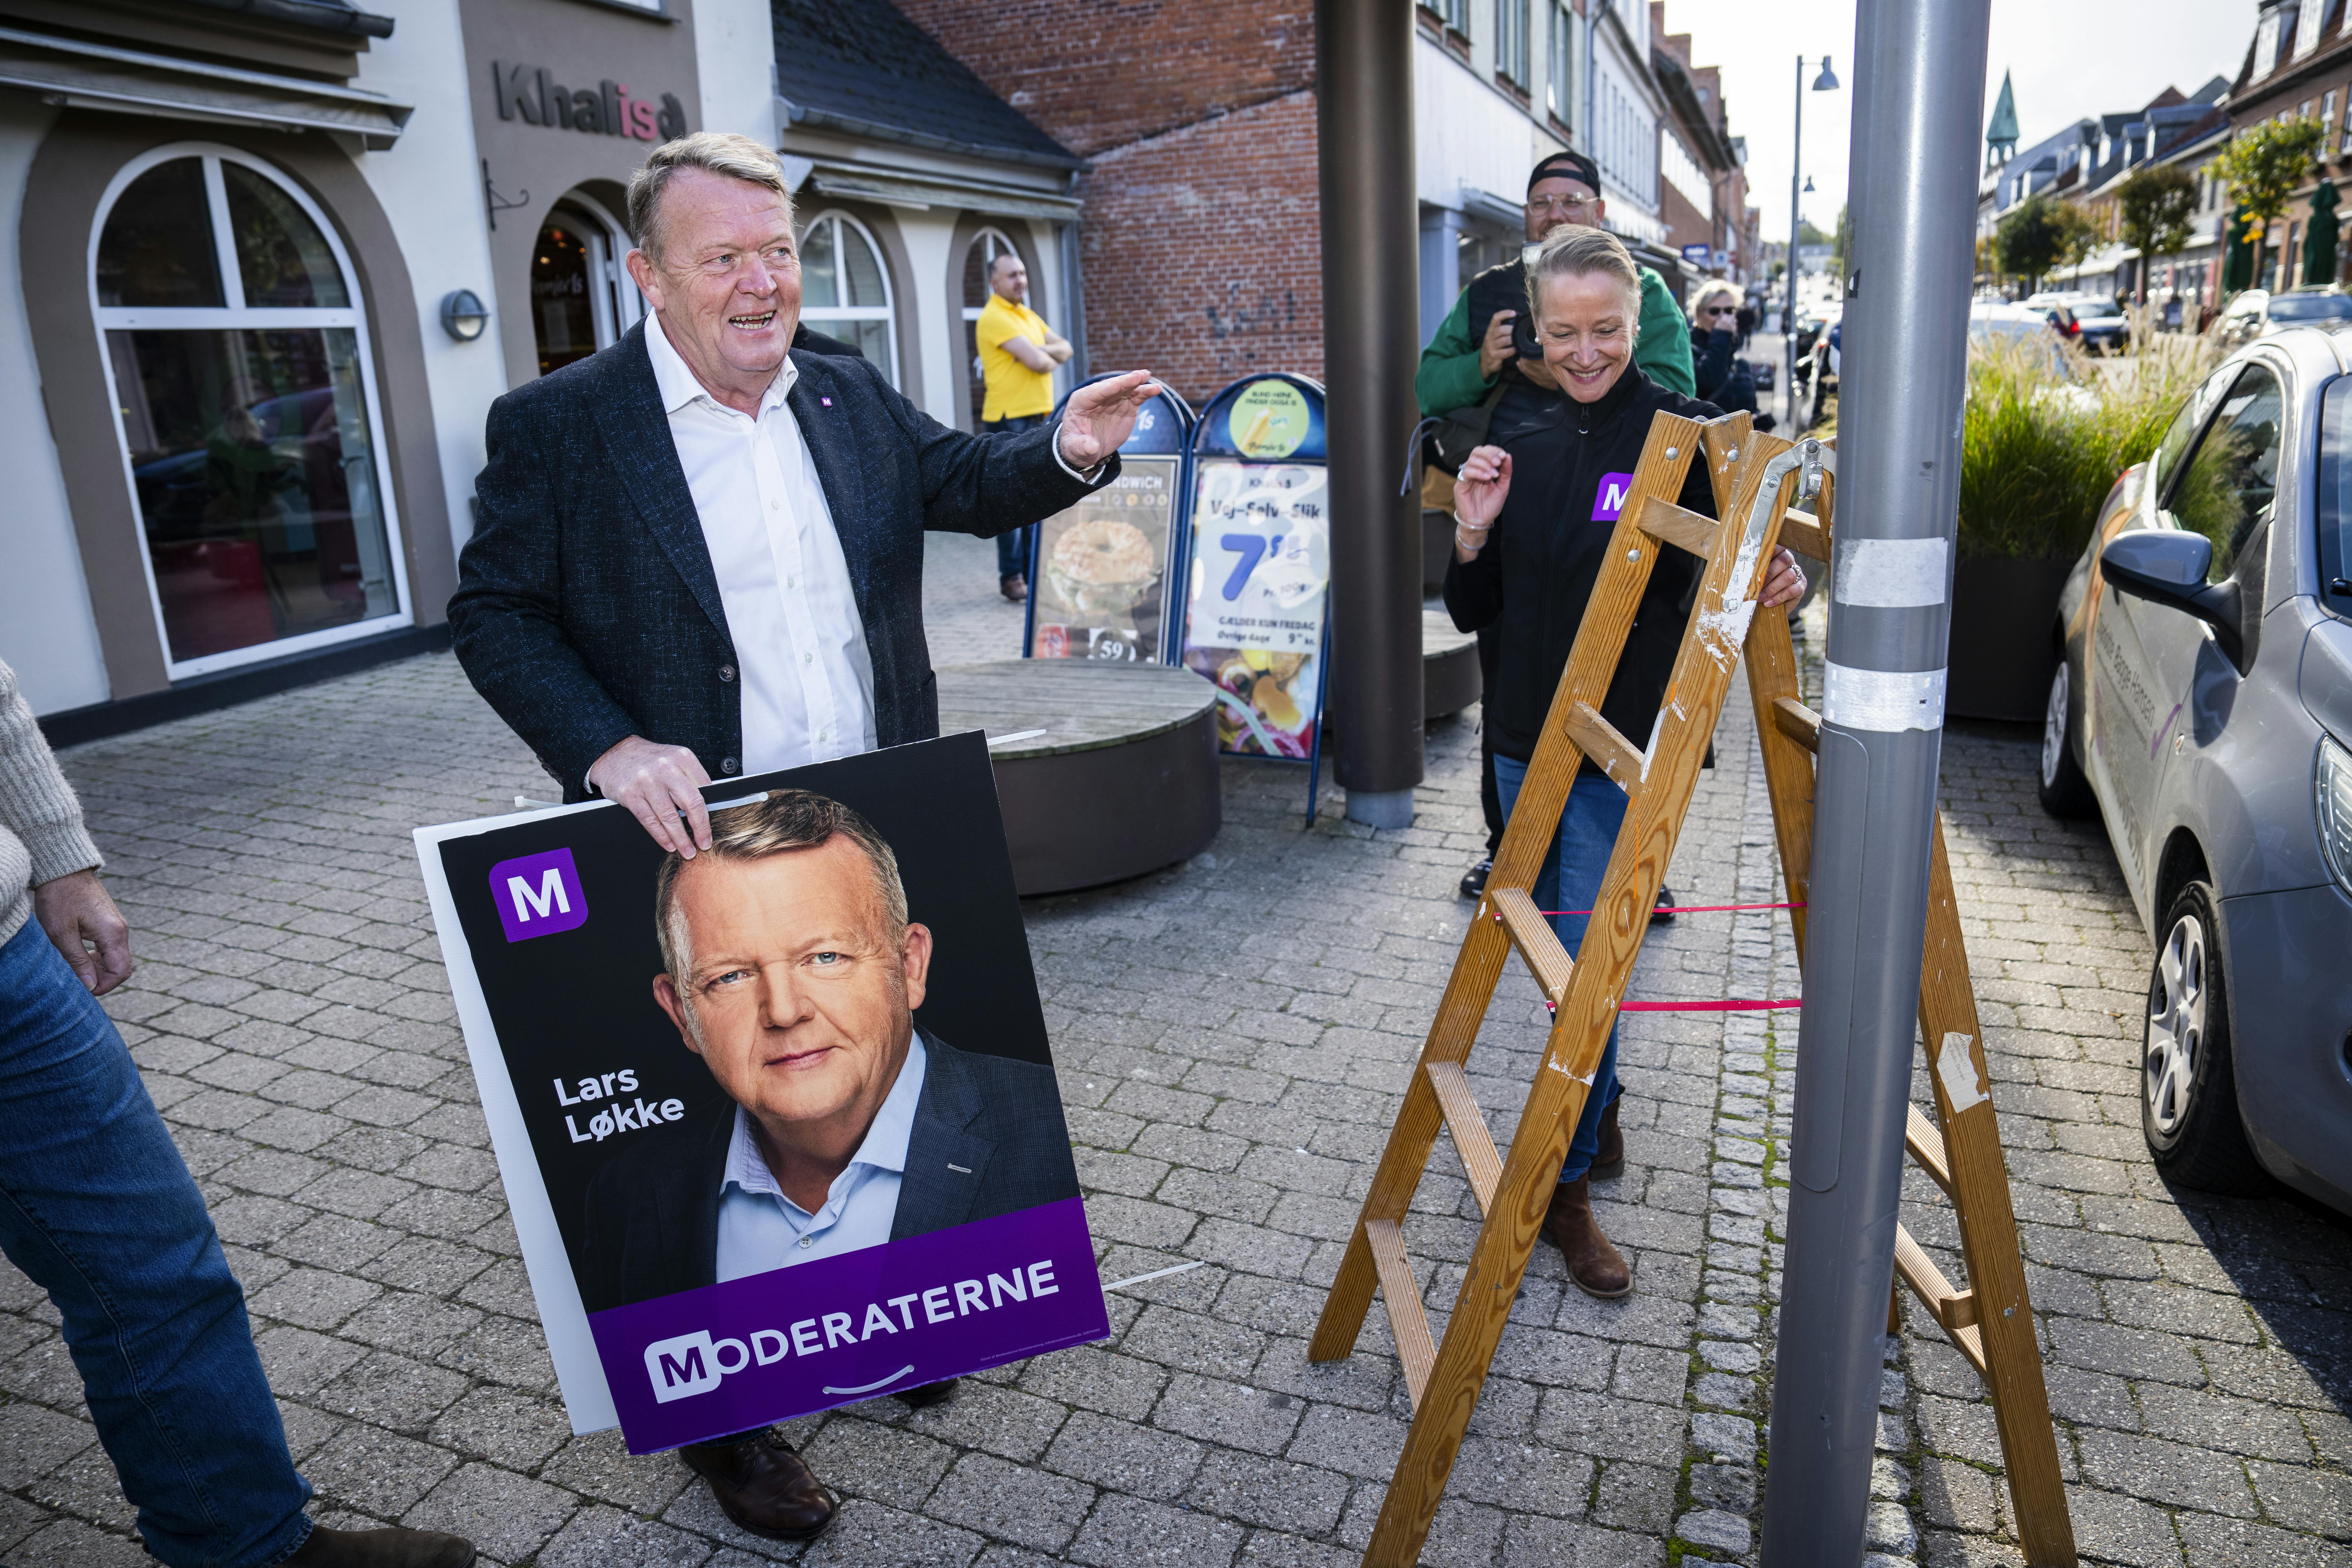 Løkke brager frem - mere end hver fjerede dansker ville stemme på ham som kommende statsminister. Også selvom han ikke er officiel kandidat til posten&nbsp;
